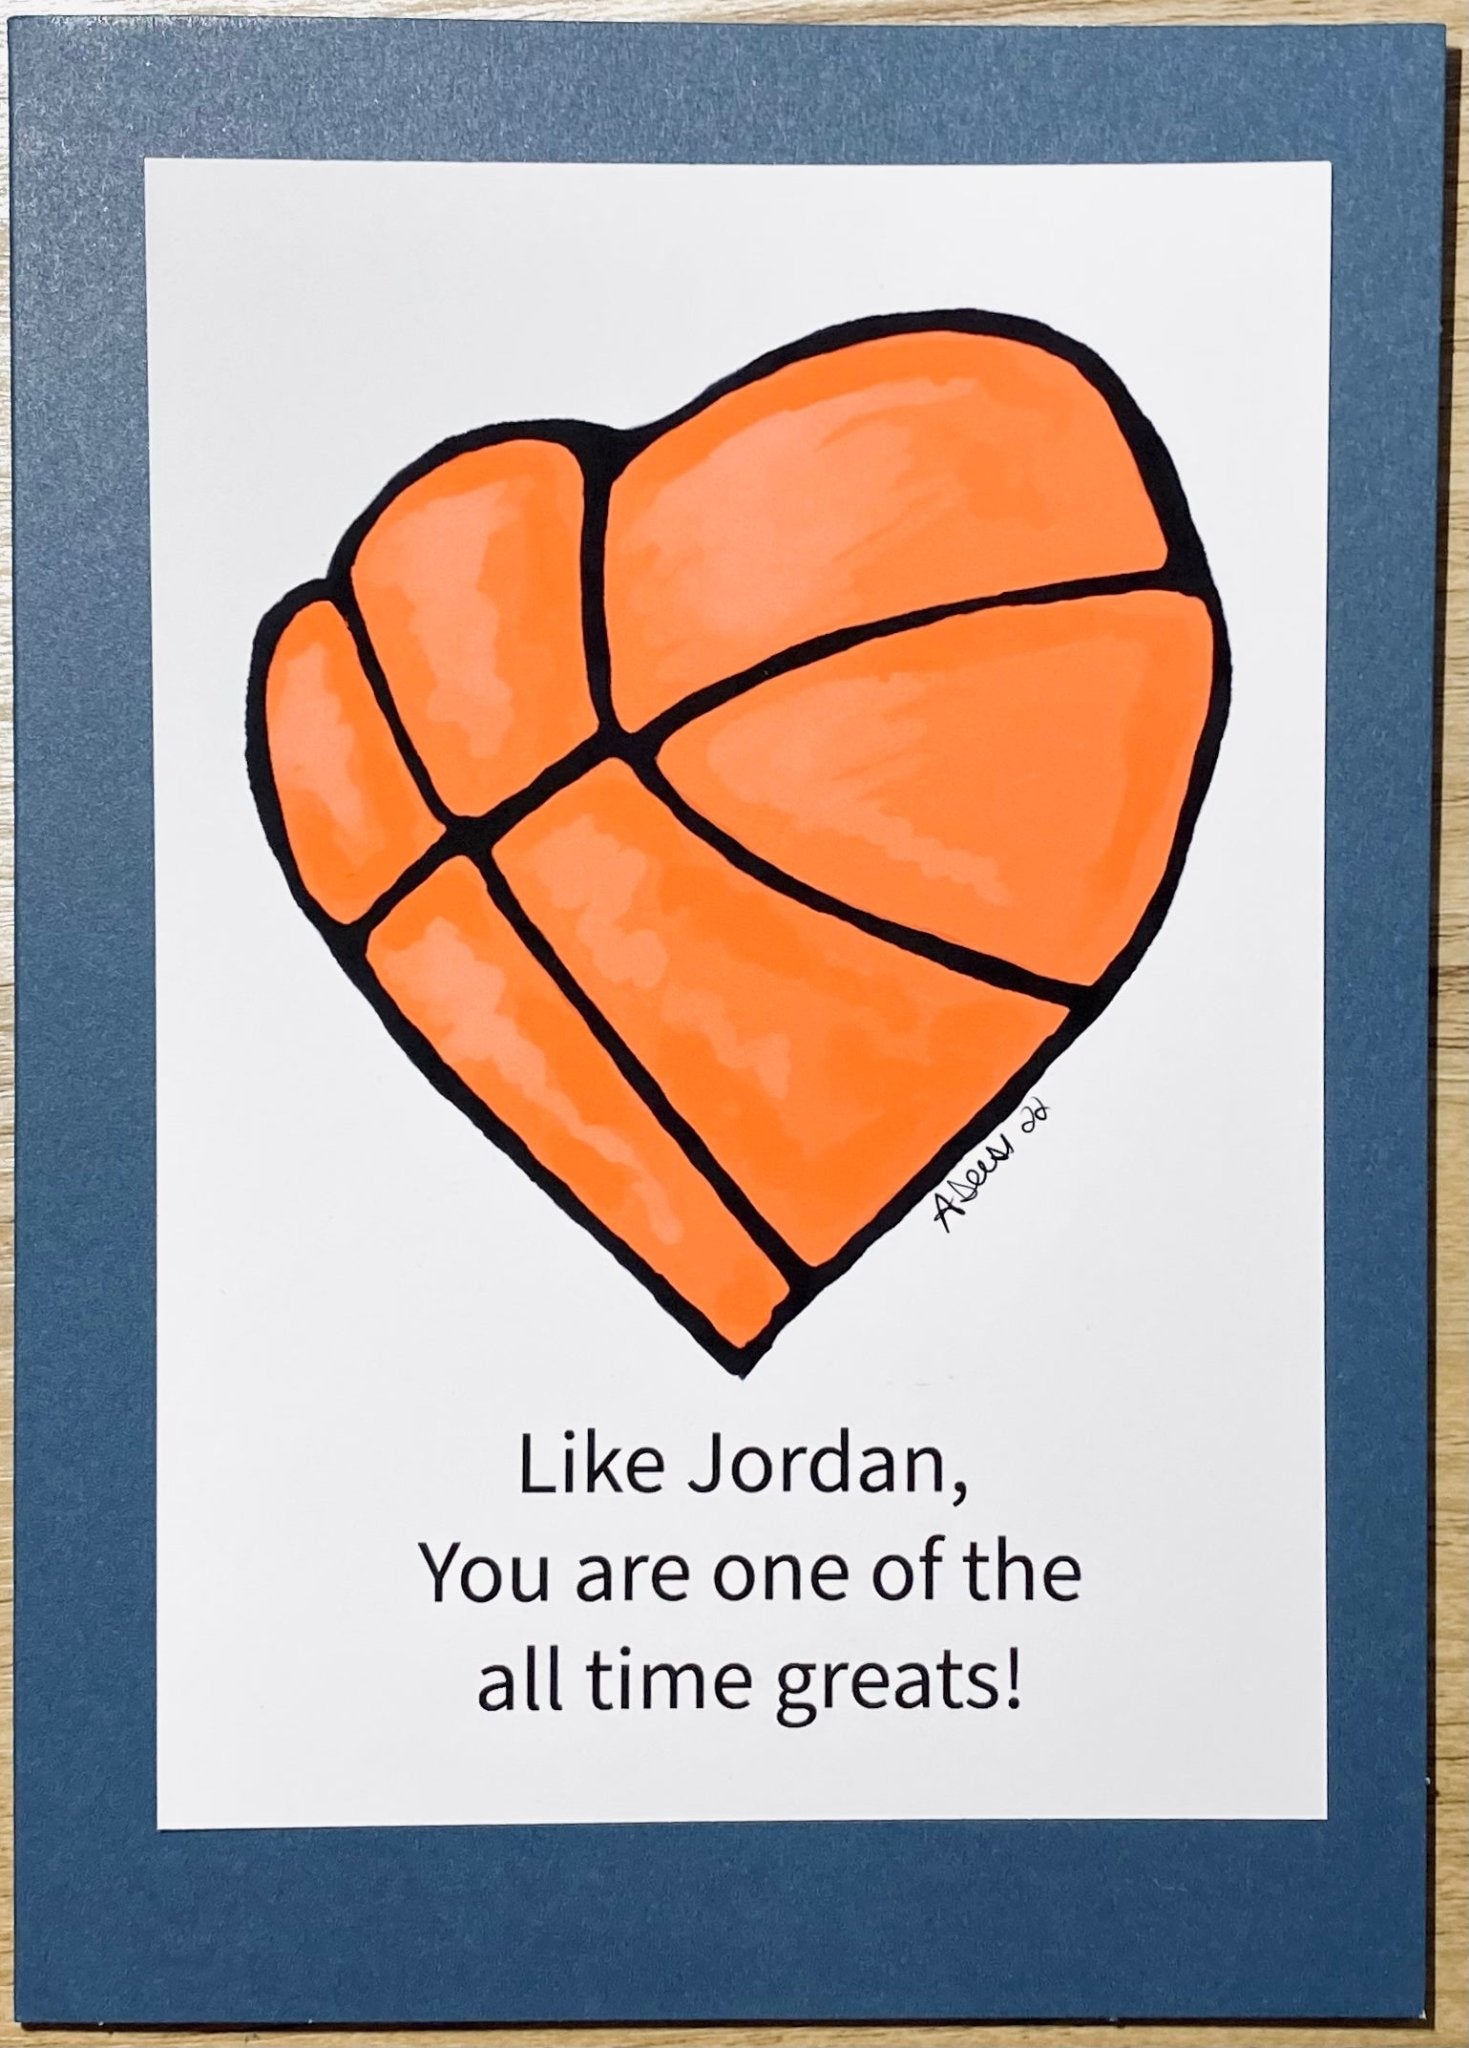 “Jordan” Heart Greeting Card - Blue Cava